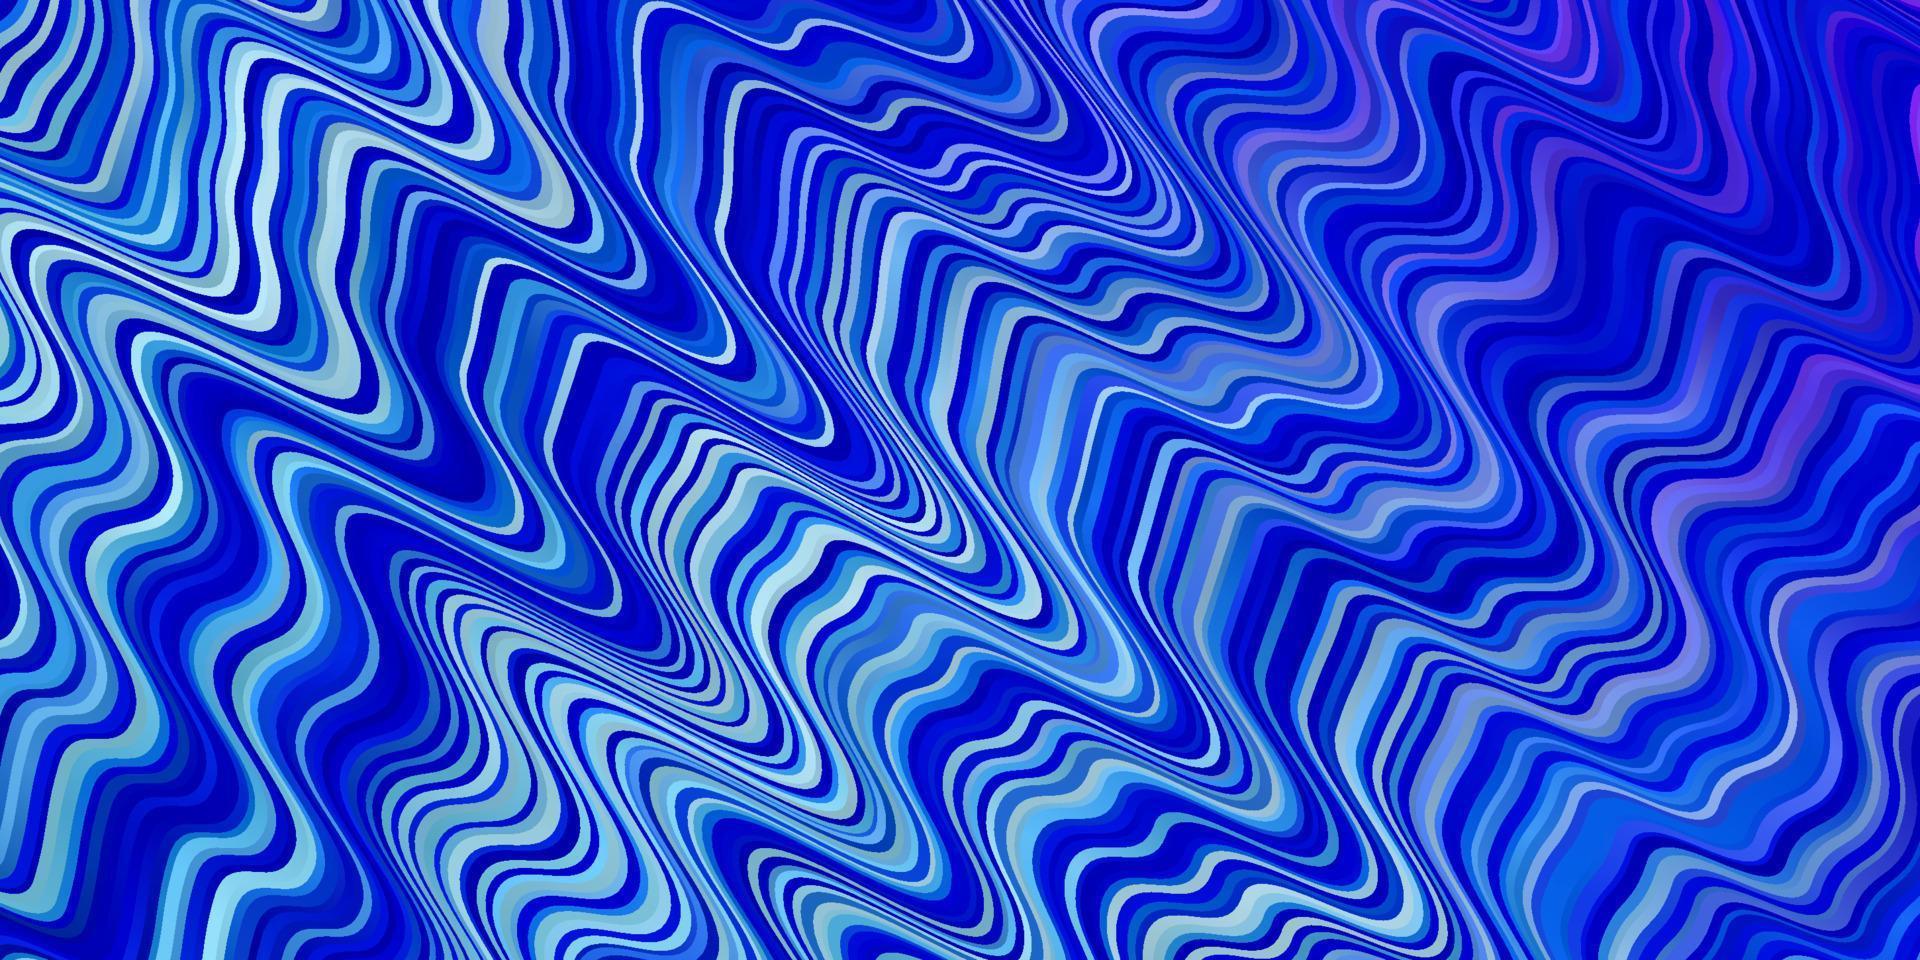 fundo vector rosa claro azul com linhas dobradas.